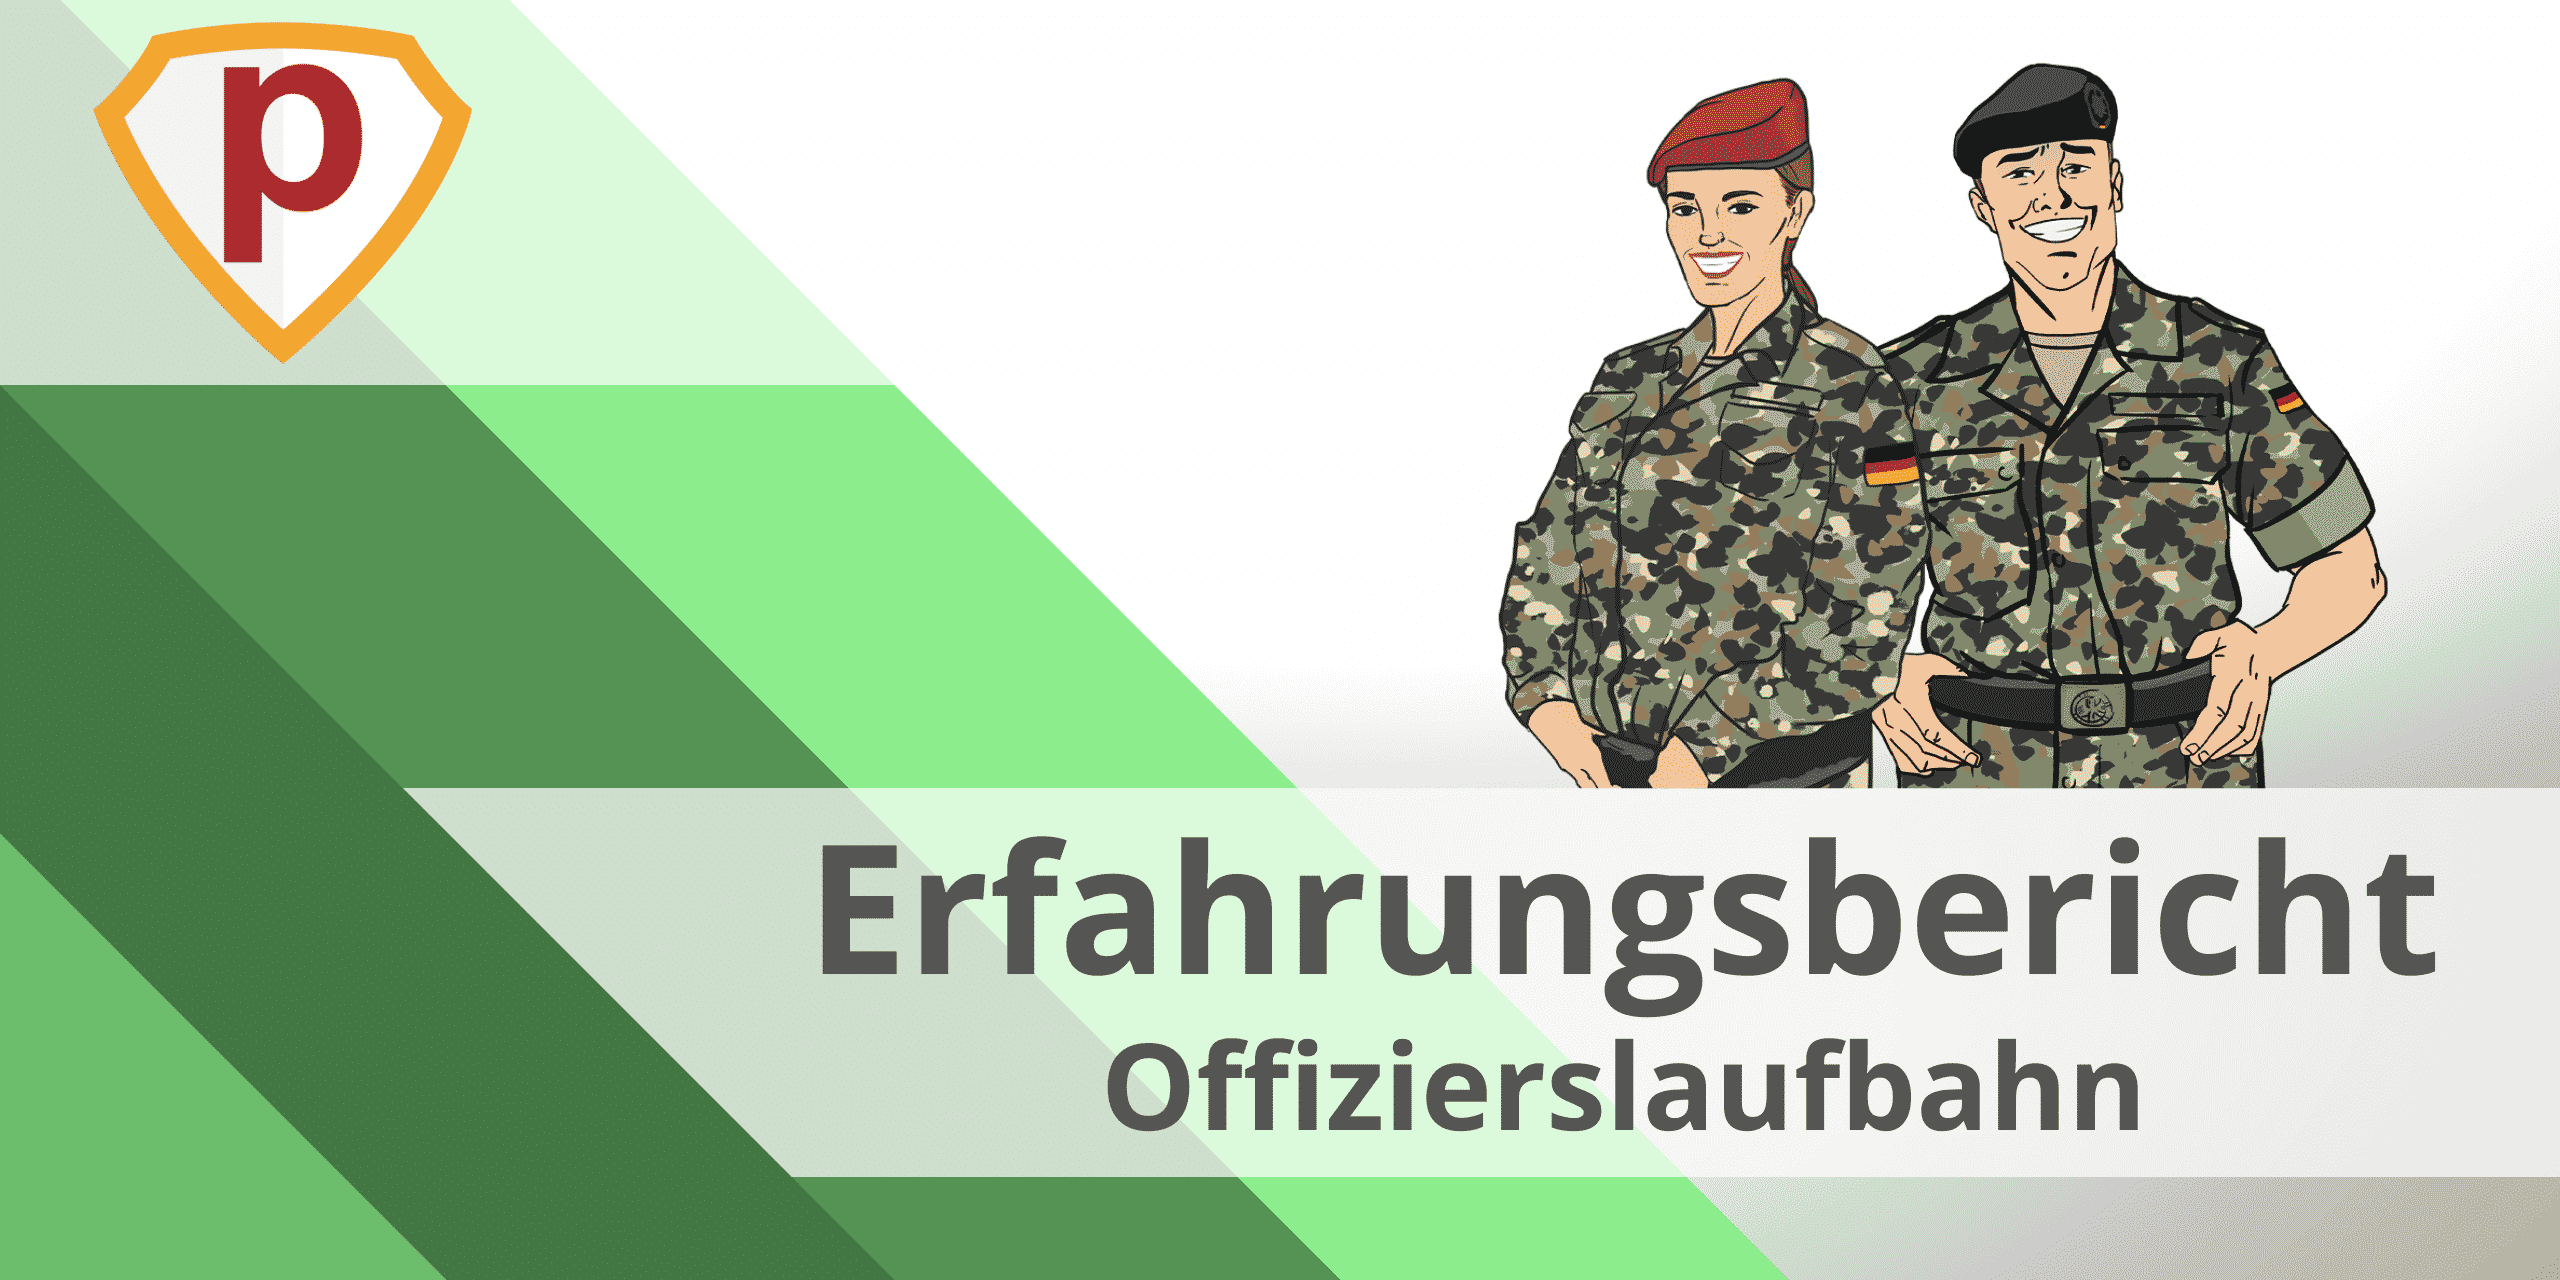 Eriks Erfahrungsbericht zum Bundeswehr Offizier Einstellungstest